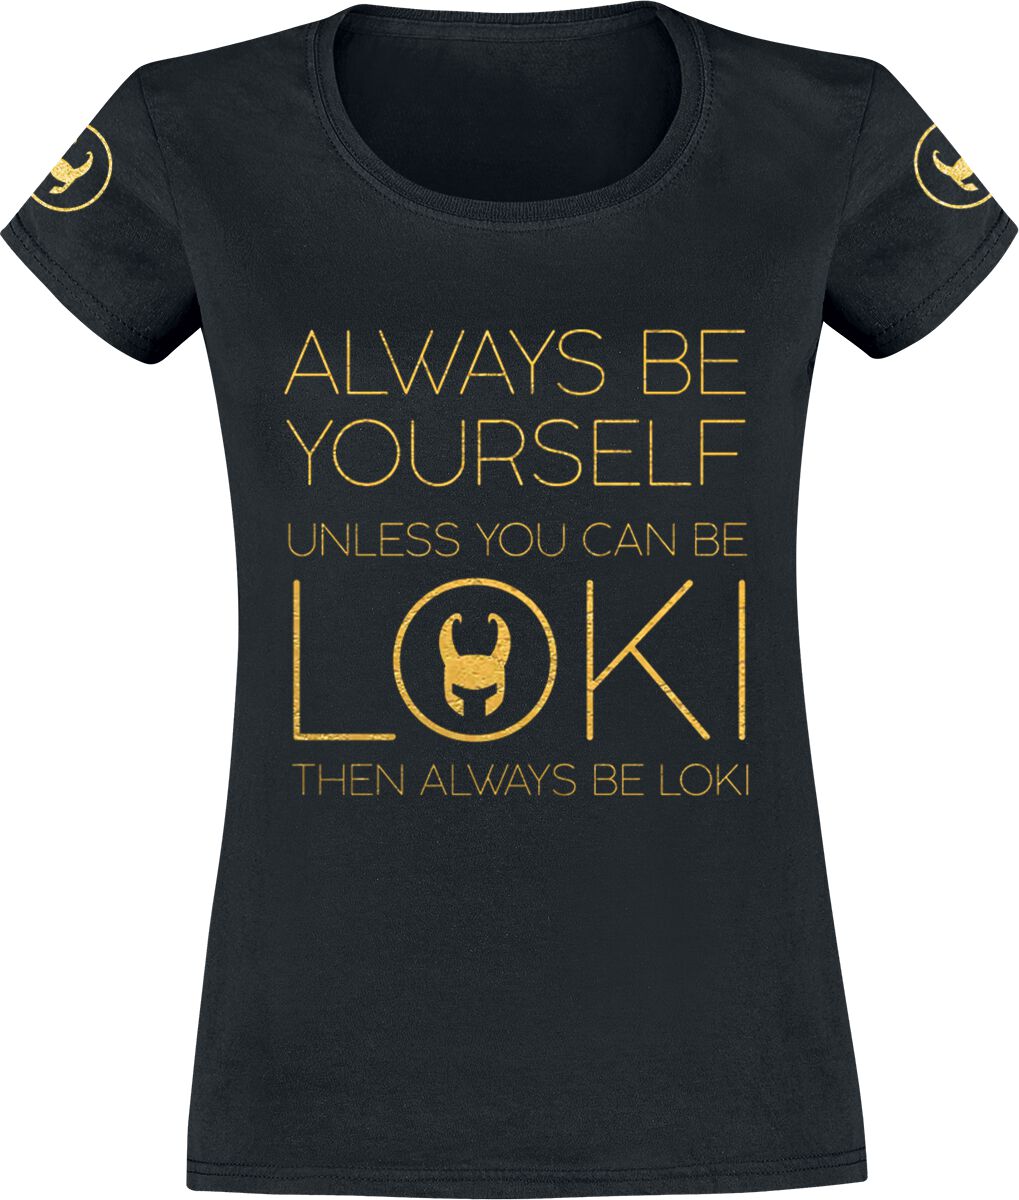 T-Shirt Manches courtes de Loki - Always Be Yourself - S à XXL - pour Femme - noir